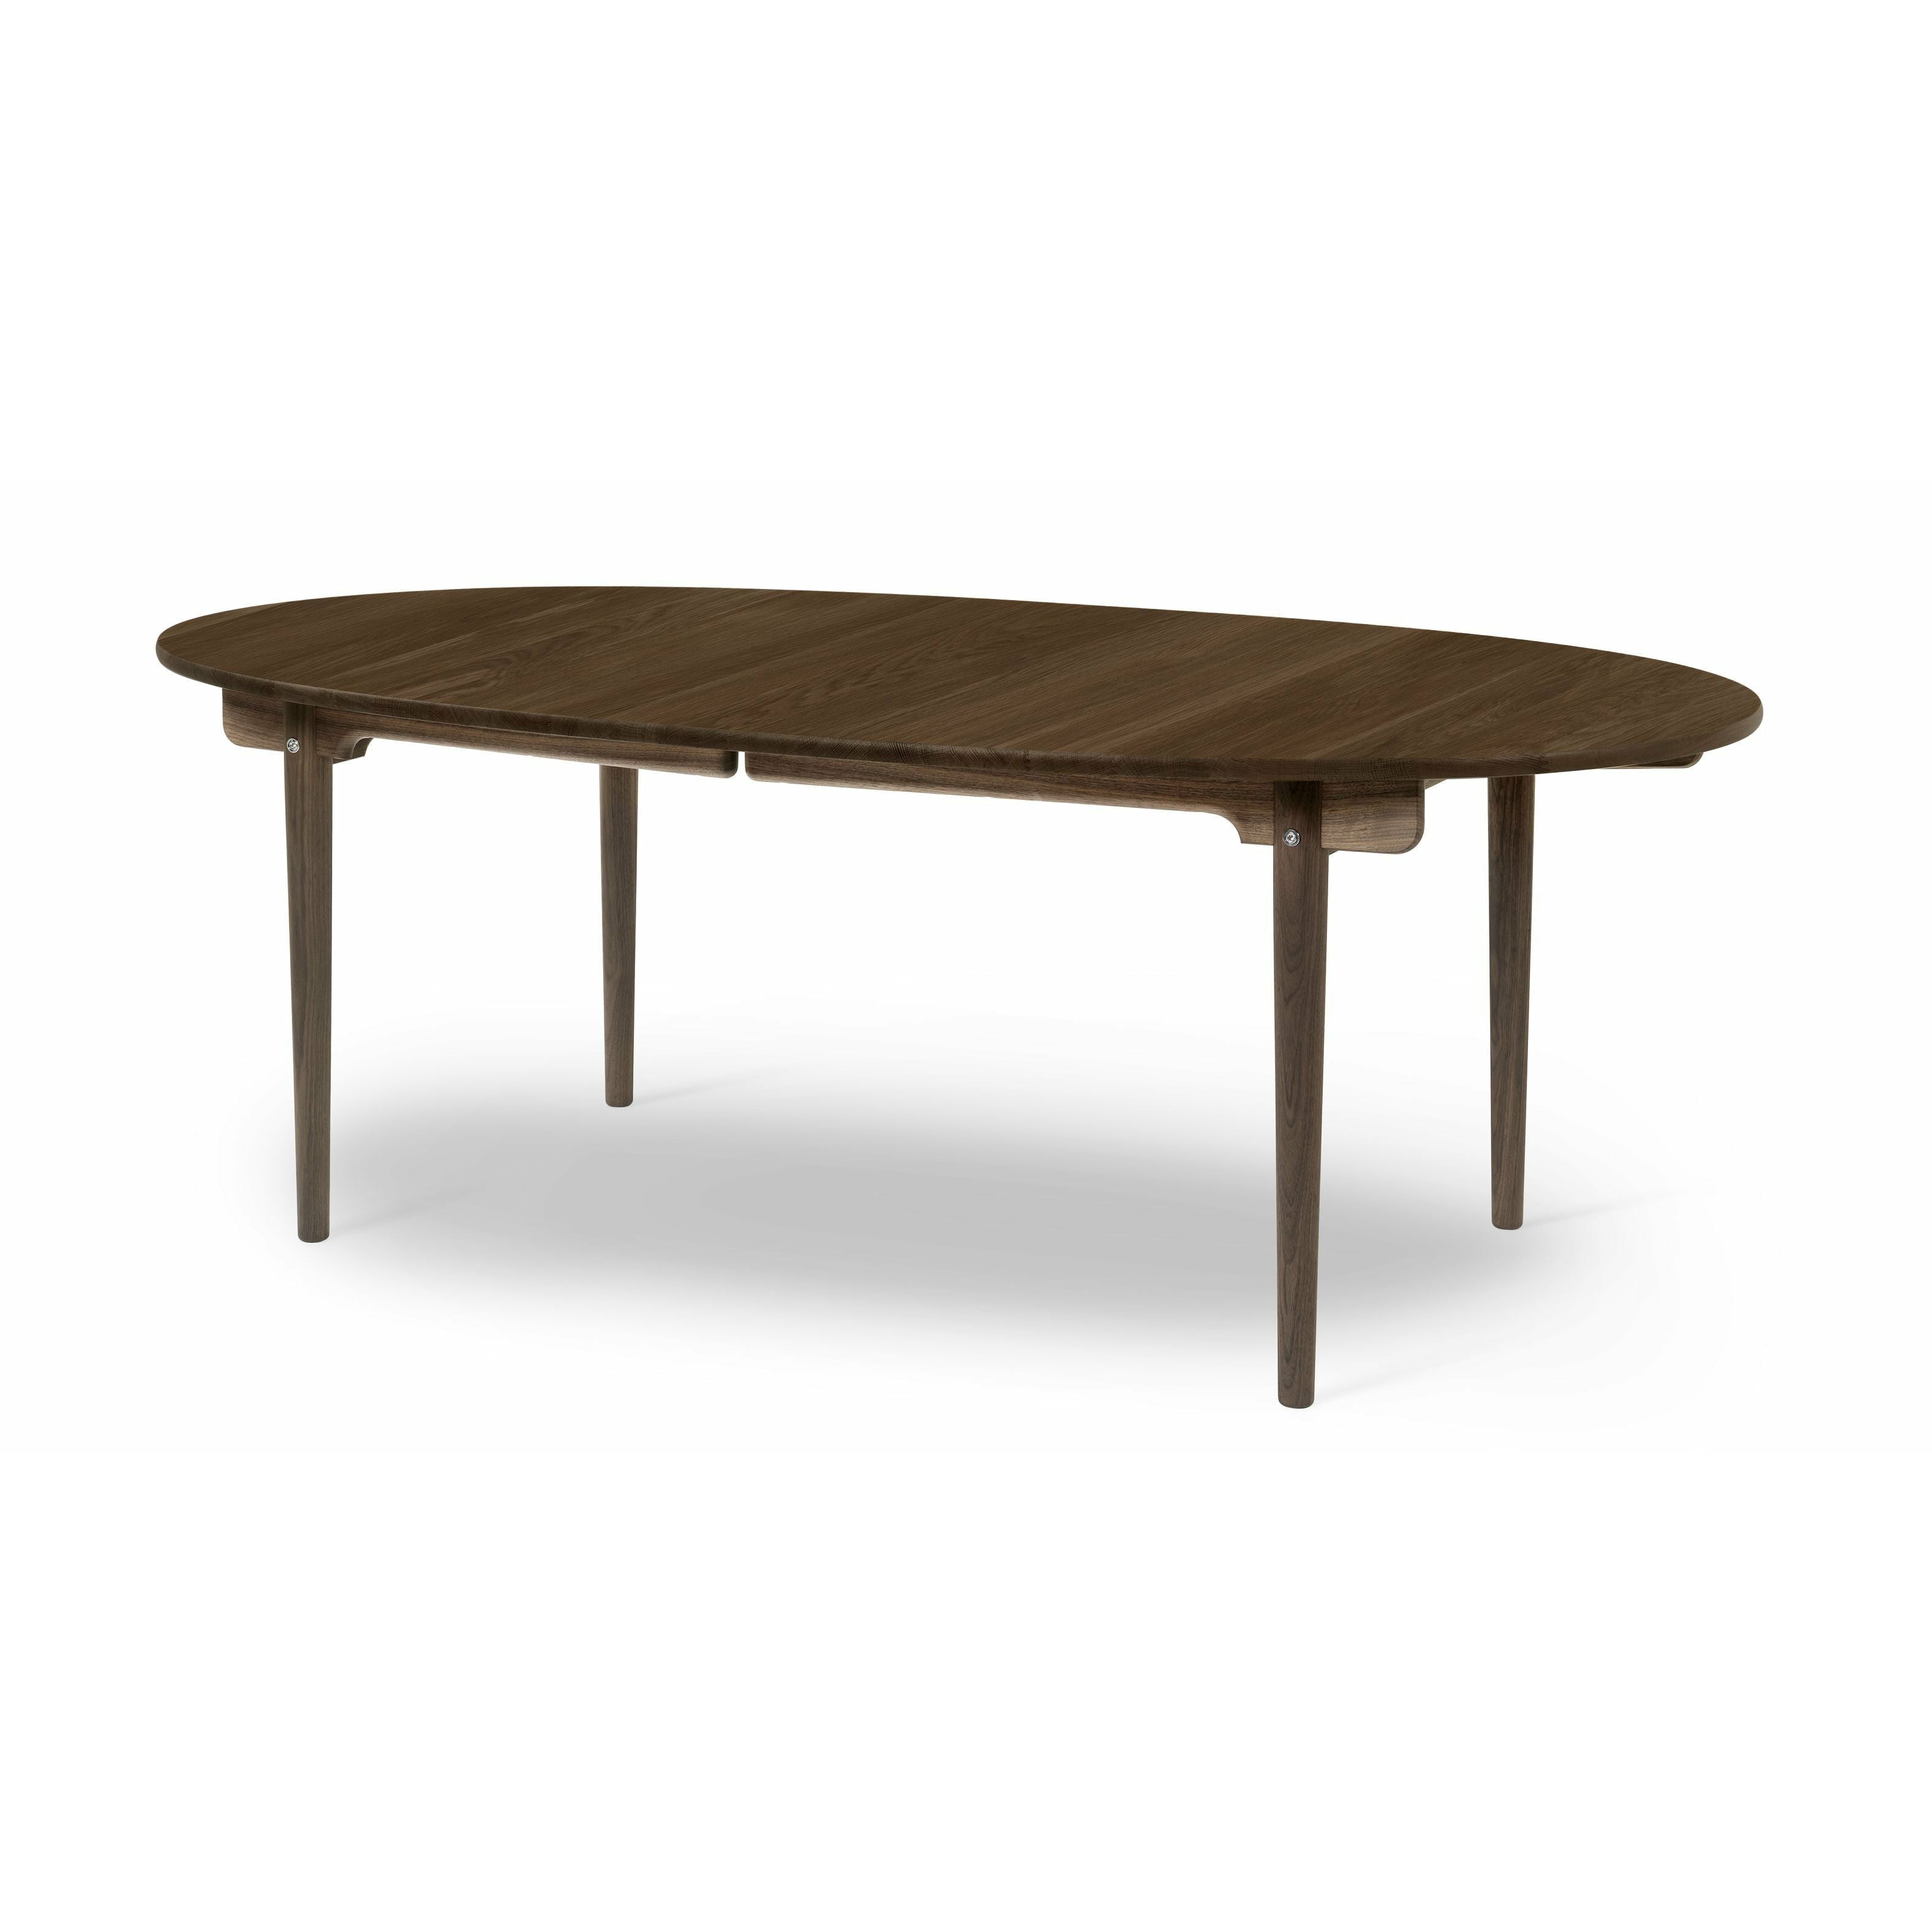 Carl Hansen CH338 matbord designat för 2 utdragsplattor, ekrökfärgad olja